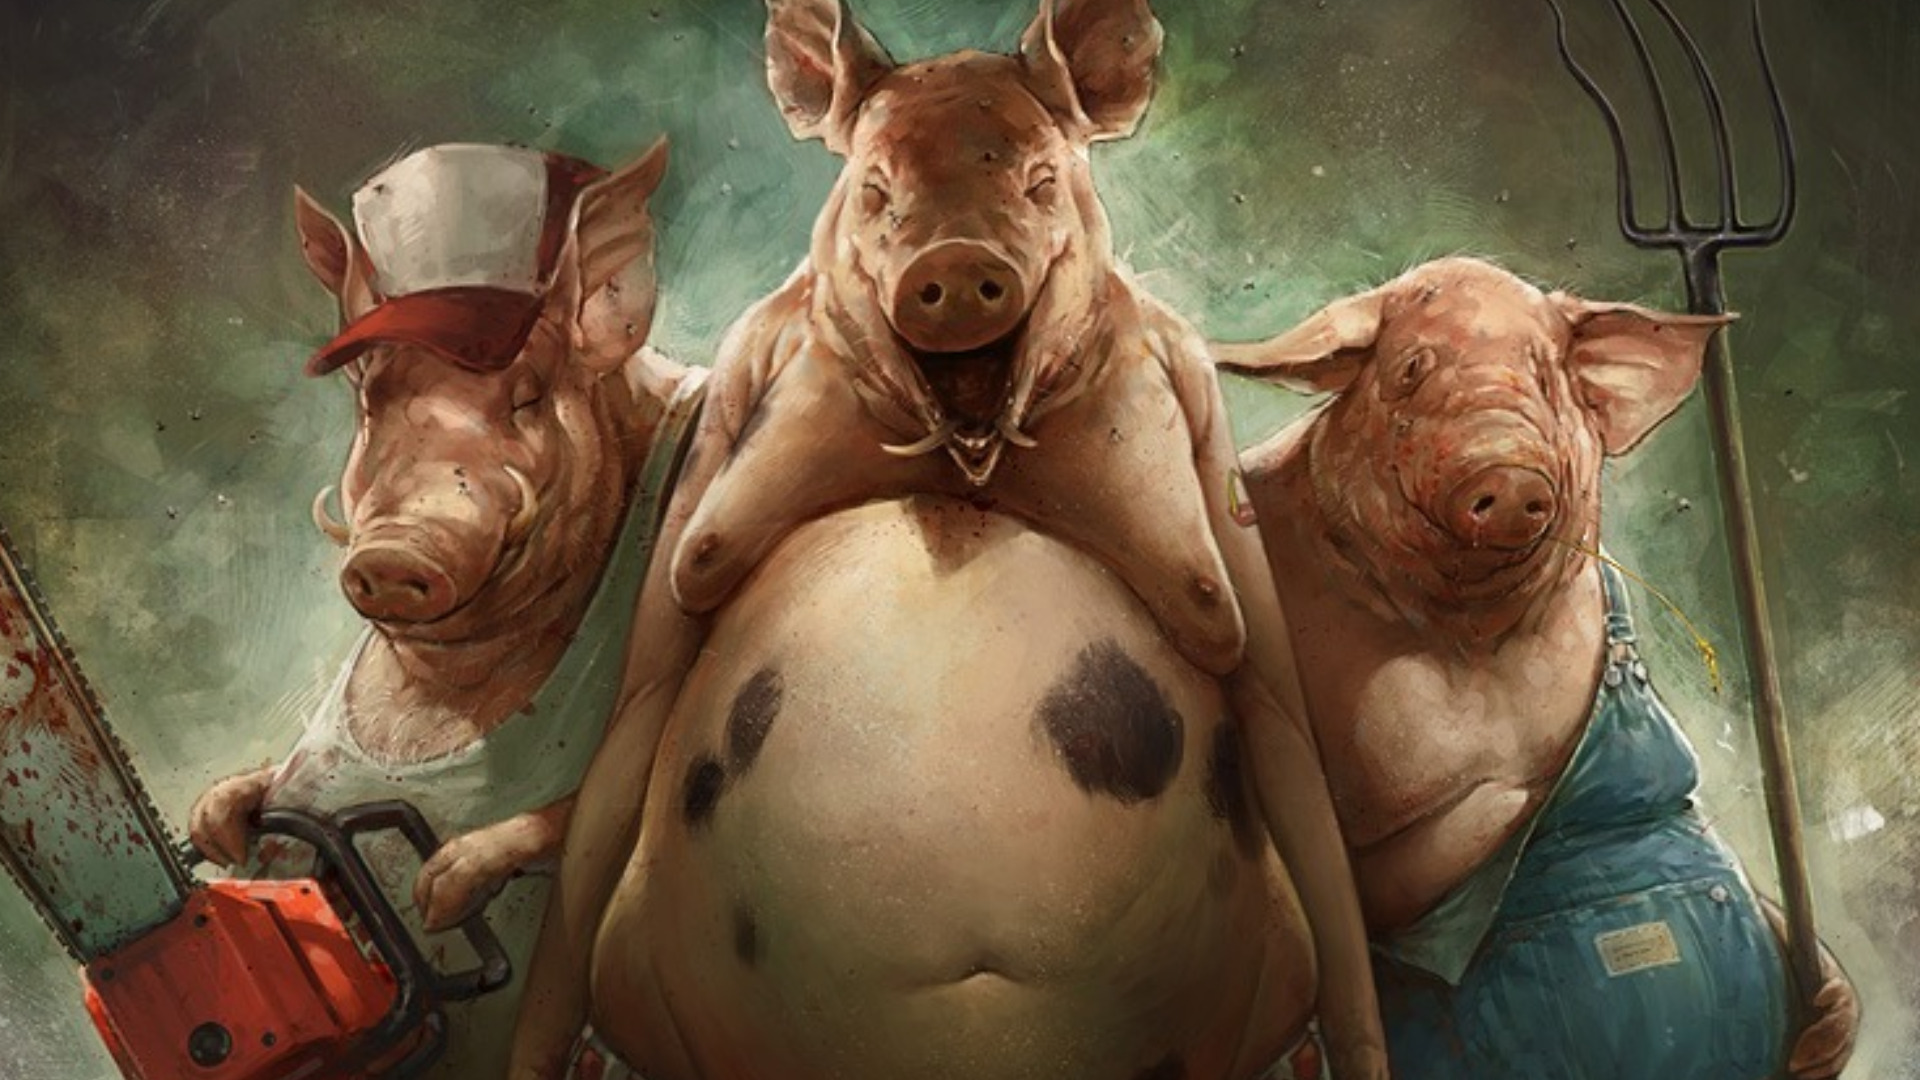 fantasy, humor, pig wallpaper for mobile